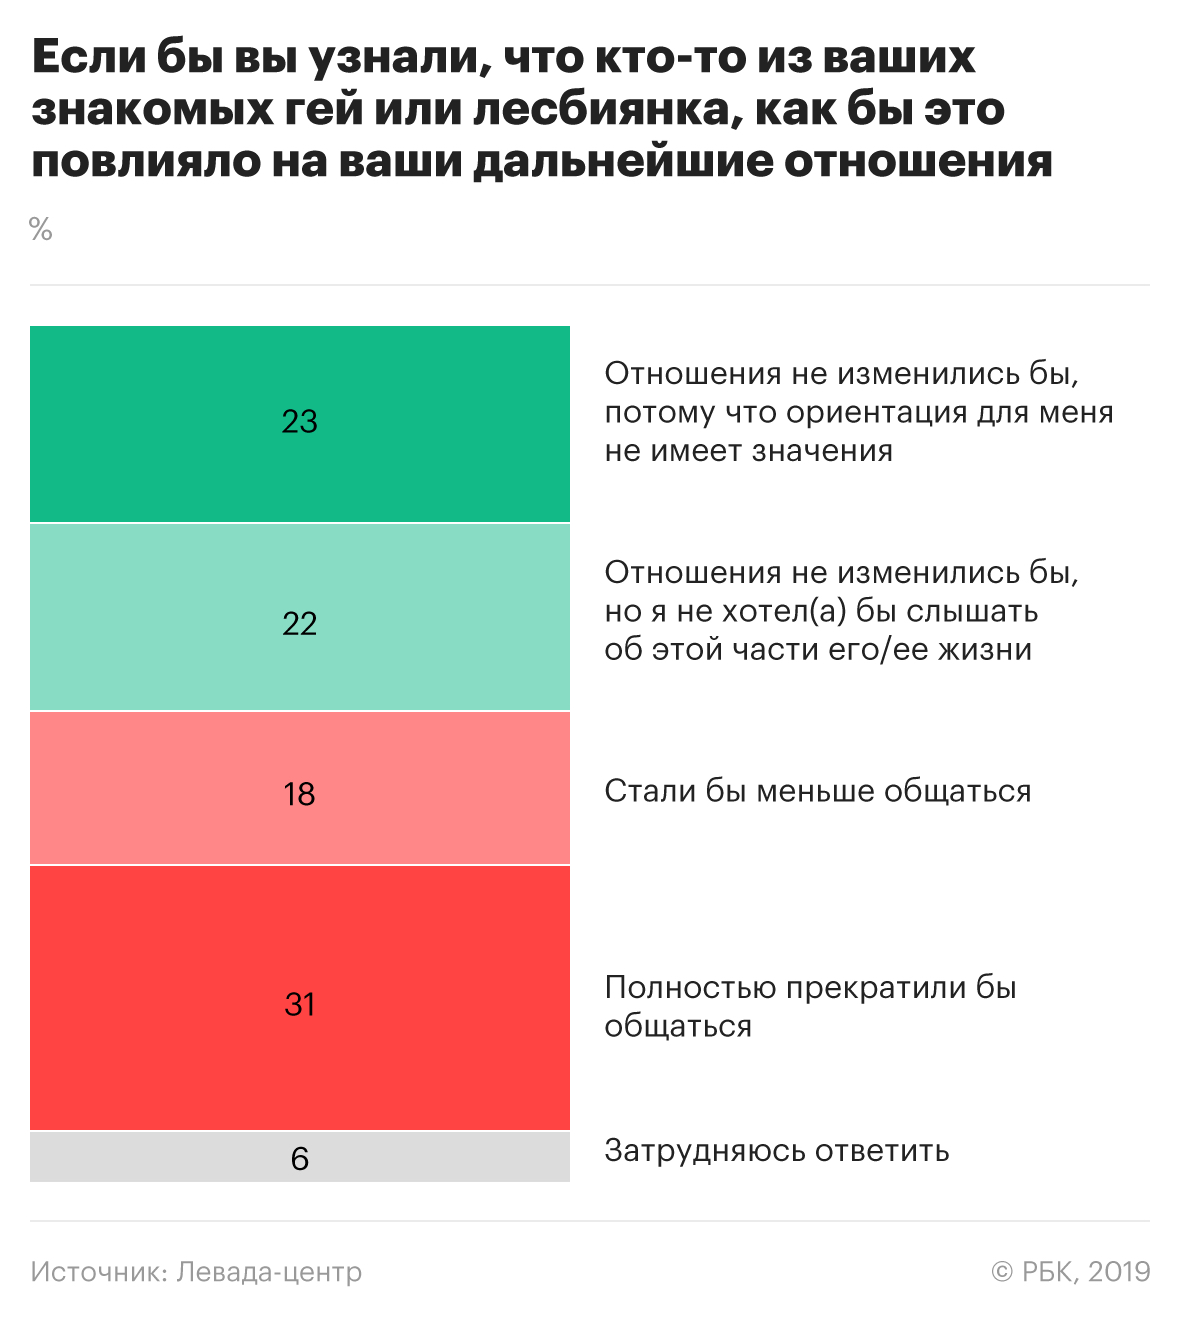 Почти половина россиян выступила за равные права для геев